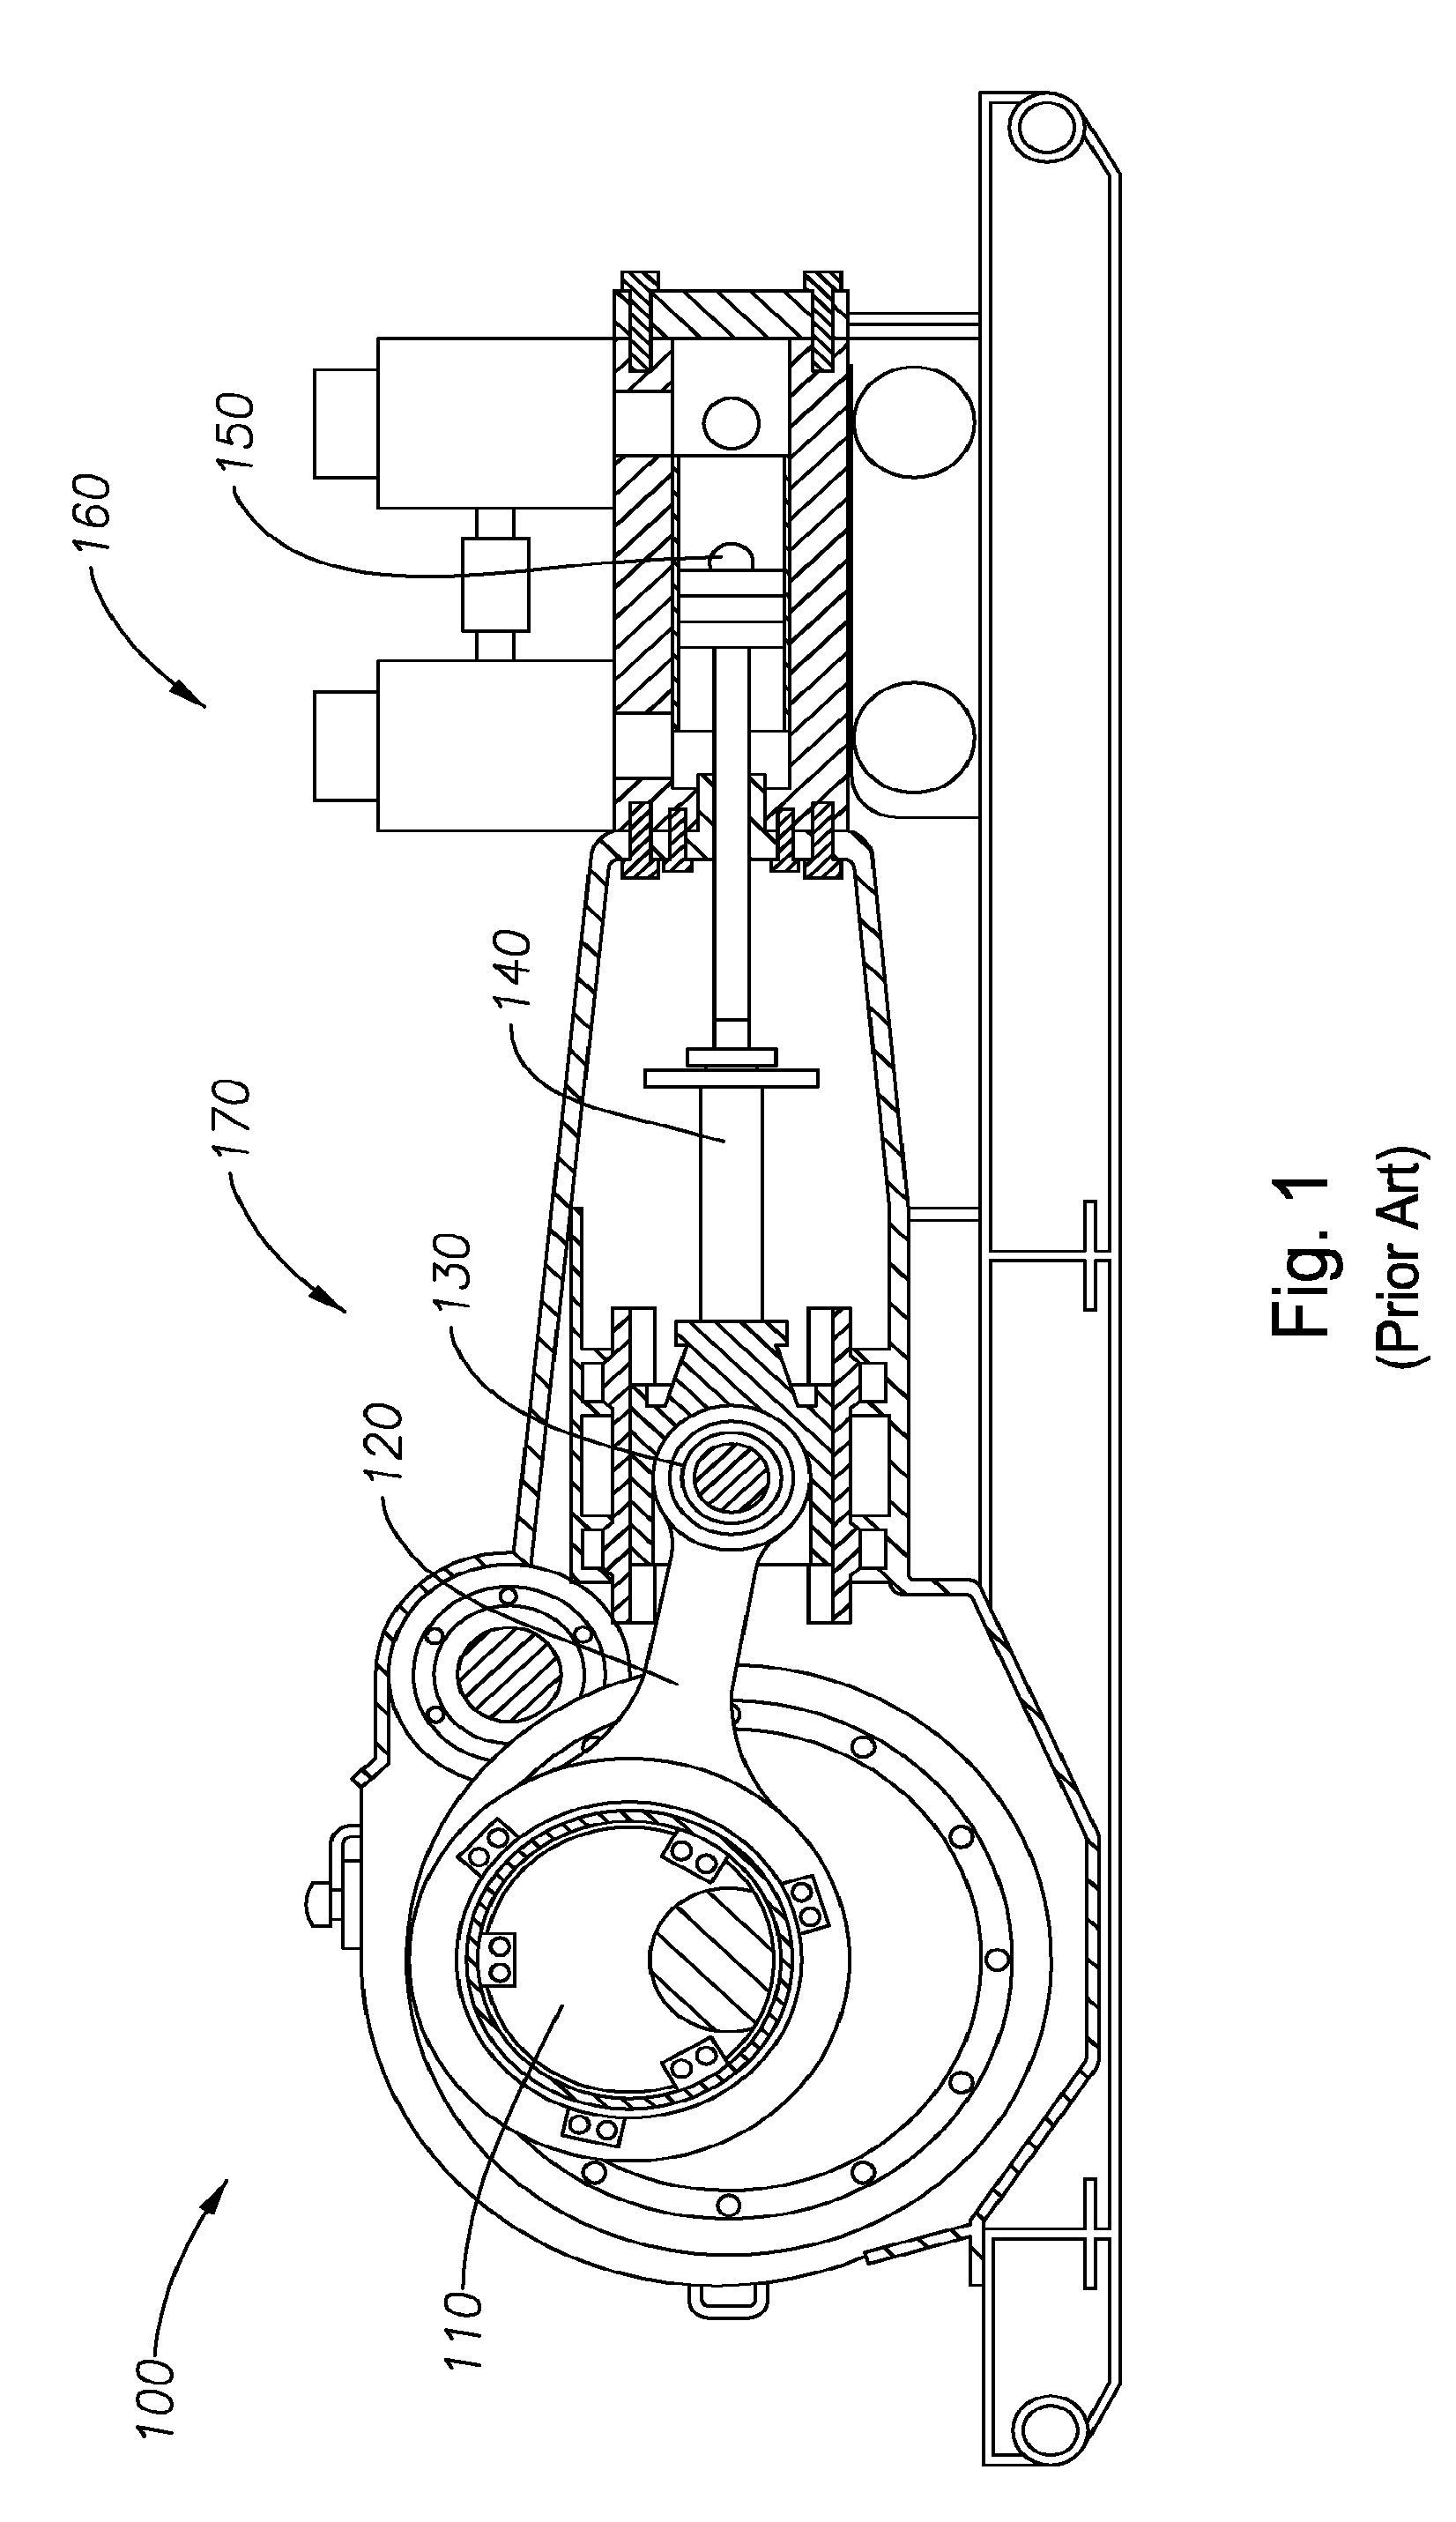 Method for assembling a modular fluid end for duplex pumps